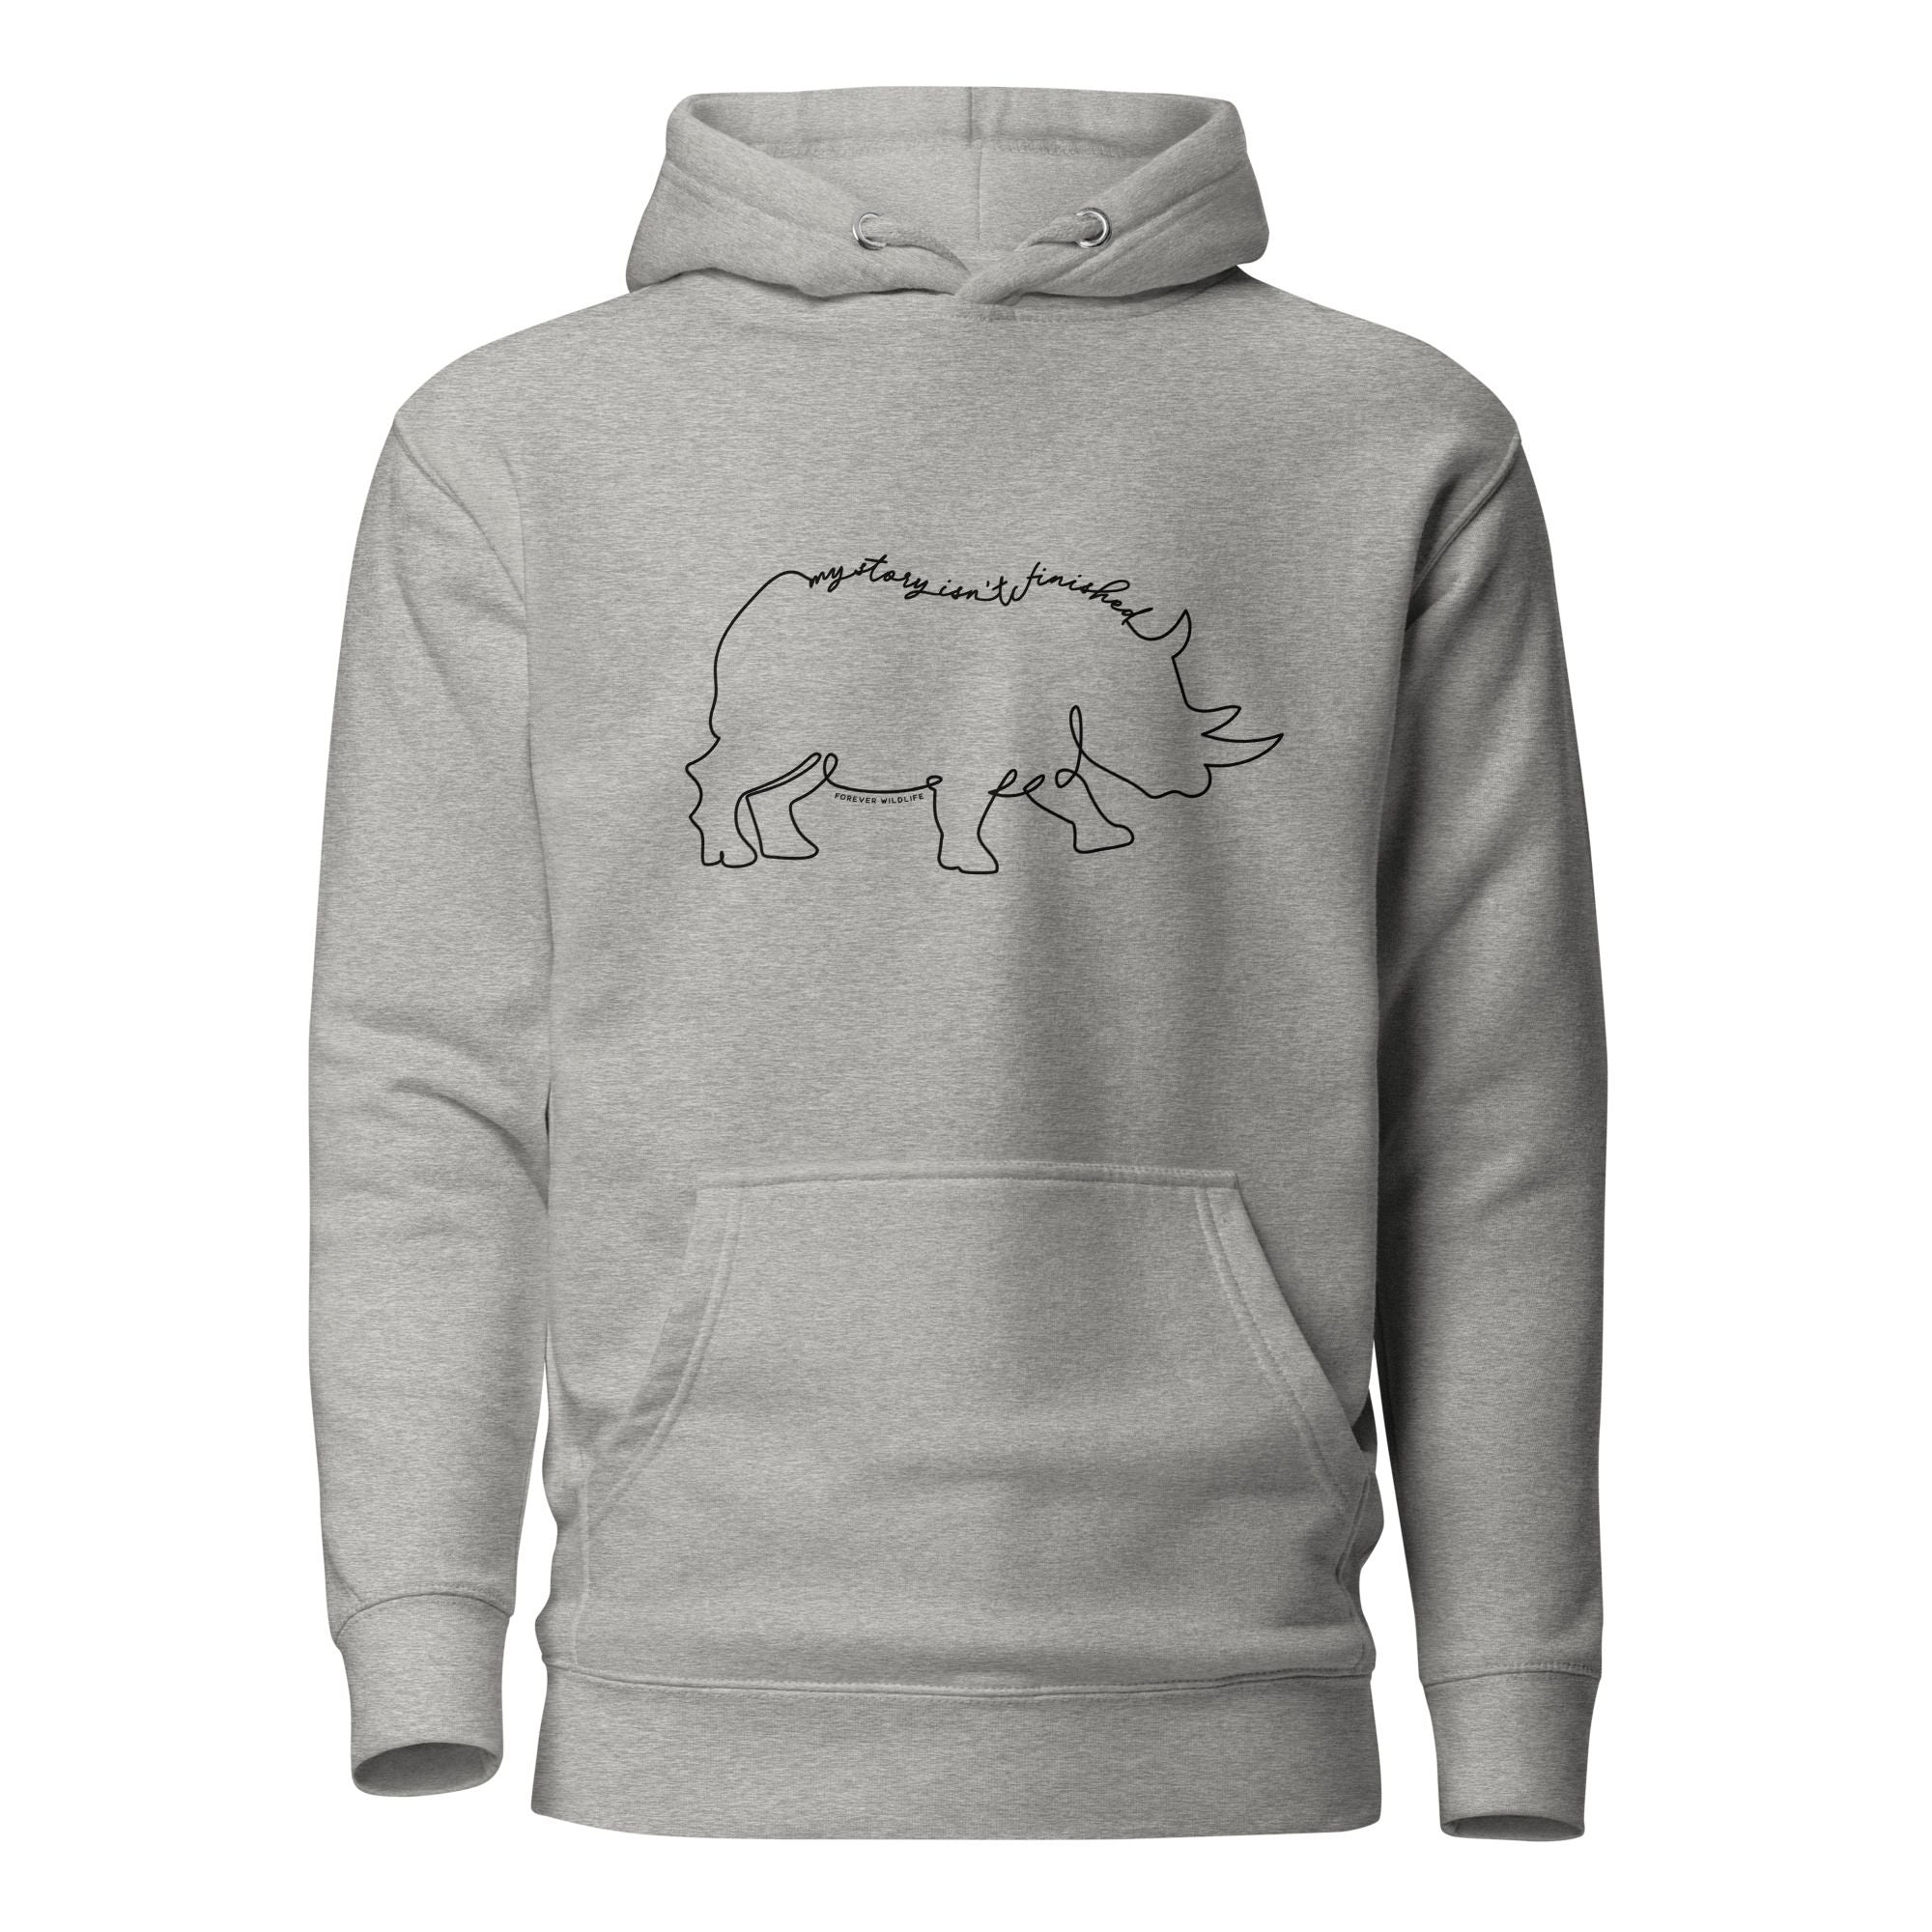 Rhino Hoodie in Grey – Premium Wildlife Animal Inspirational Hoodie Design, part of Wildlife Hoodies & Clothing from Forever Wildlife